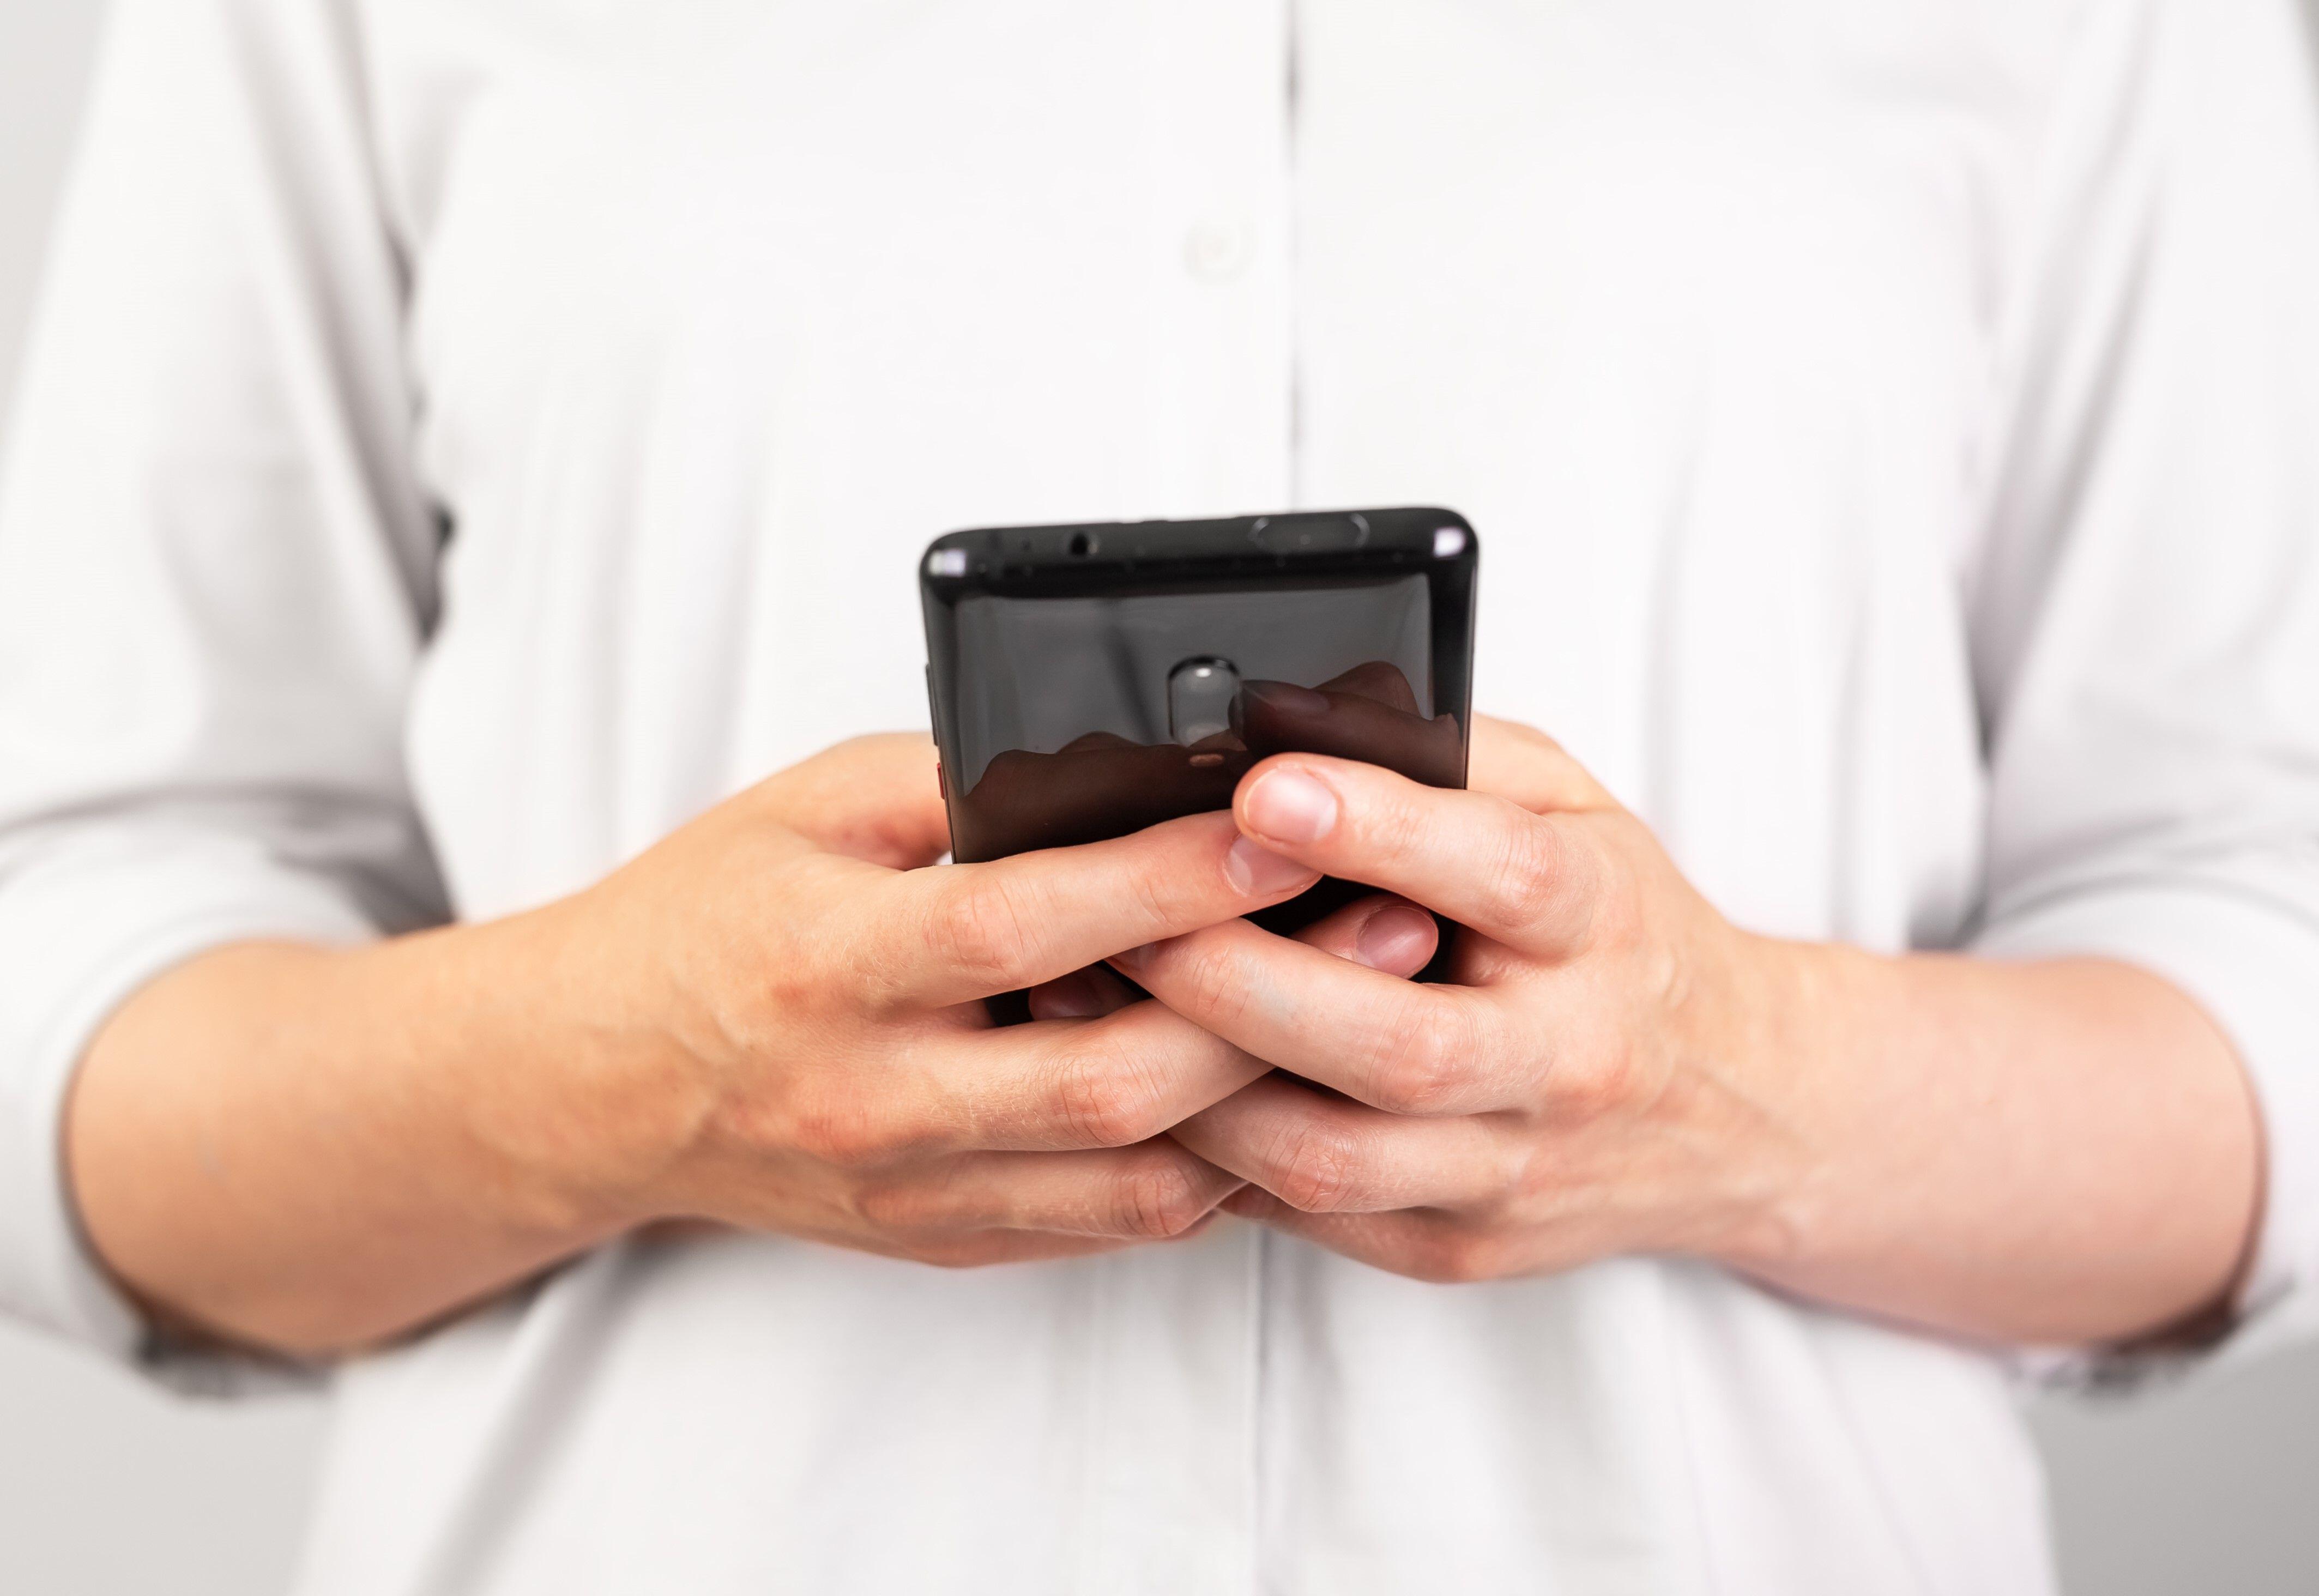 Los usuarios de Android han sido informados sobre un truco útil que puede ayudarlos a enviar mensajes de texto más rápido